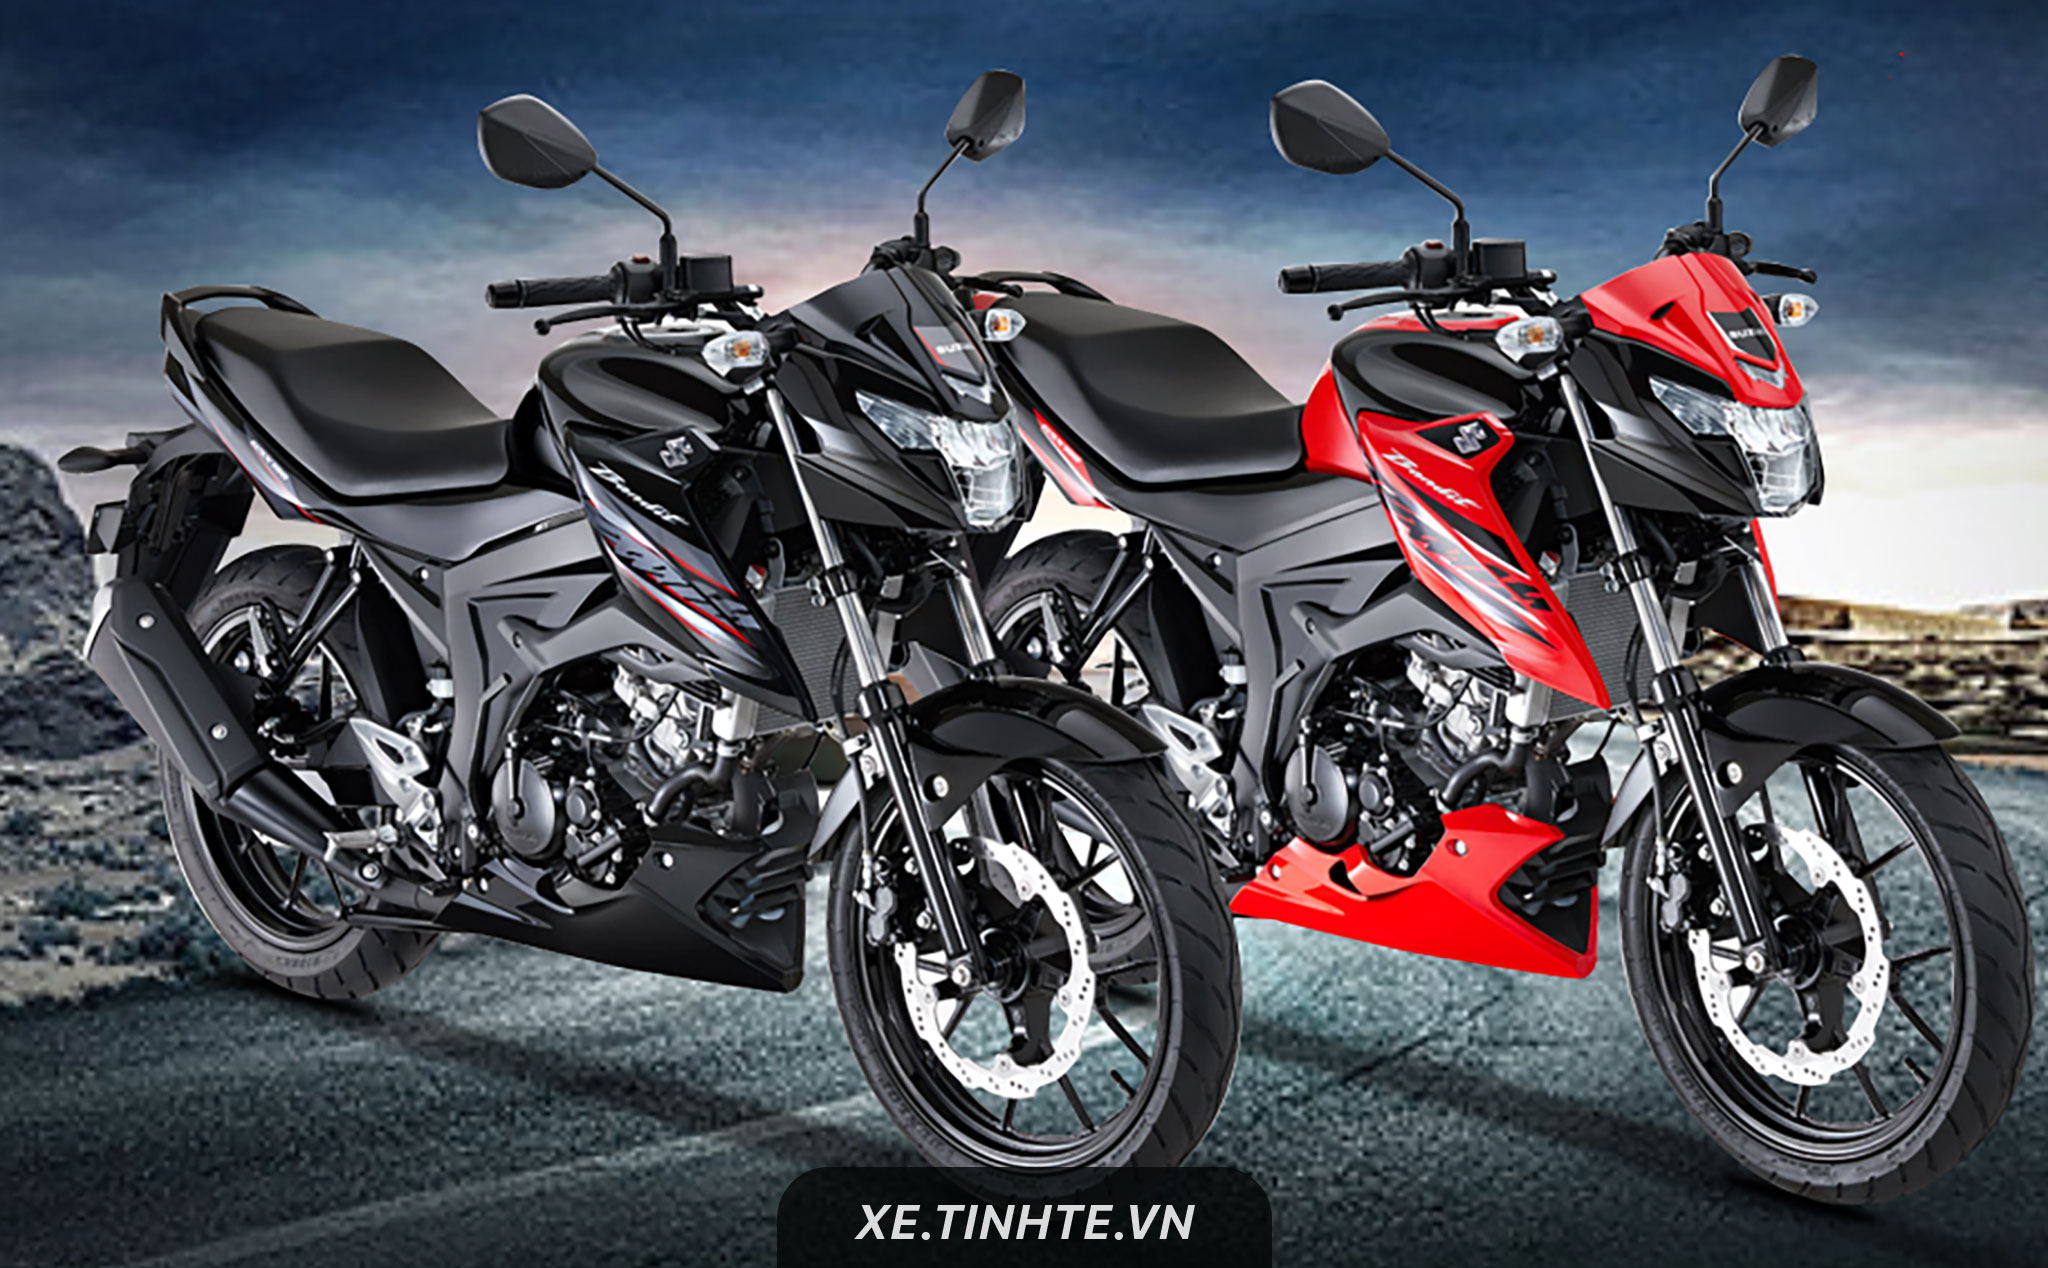 Suzuki ra mắt GSX150 Bandit tại Việt Nam: sự kết hợp giữa Raider và GSX S150, giá 68,9 triệu